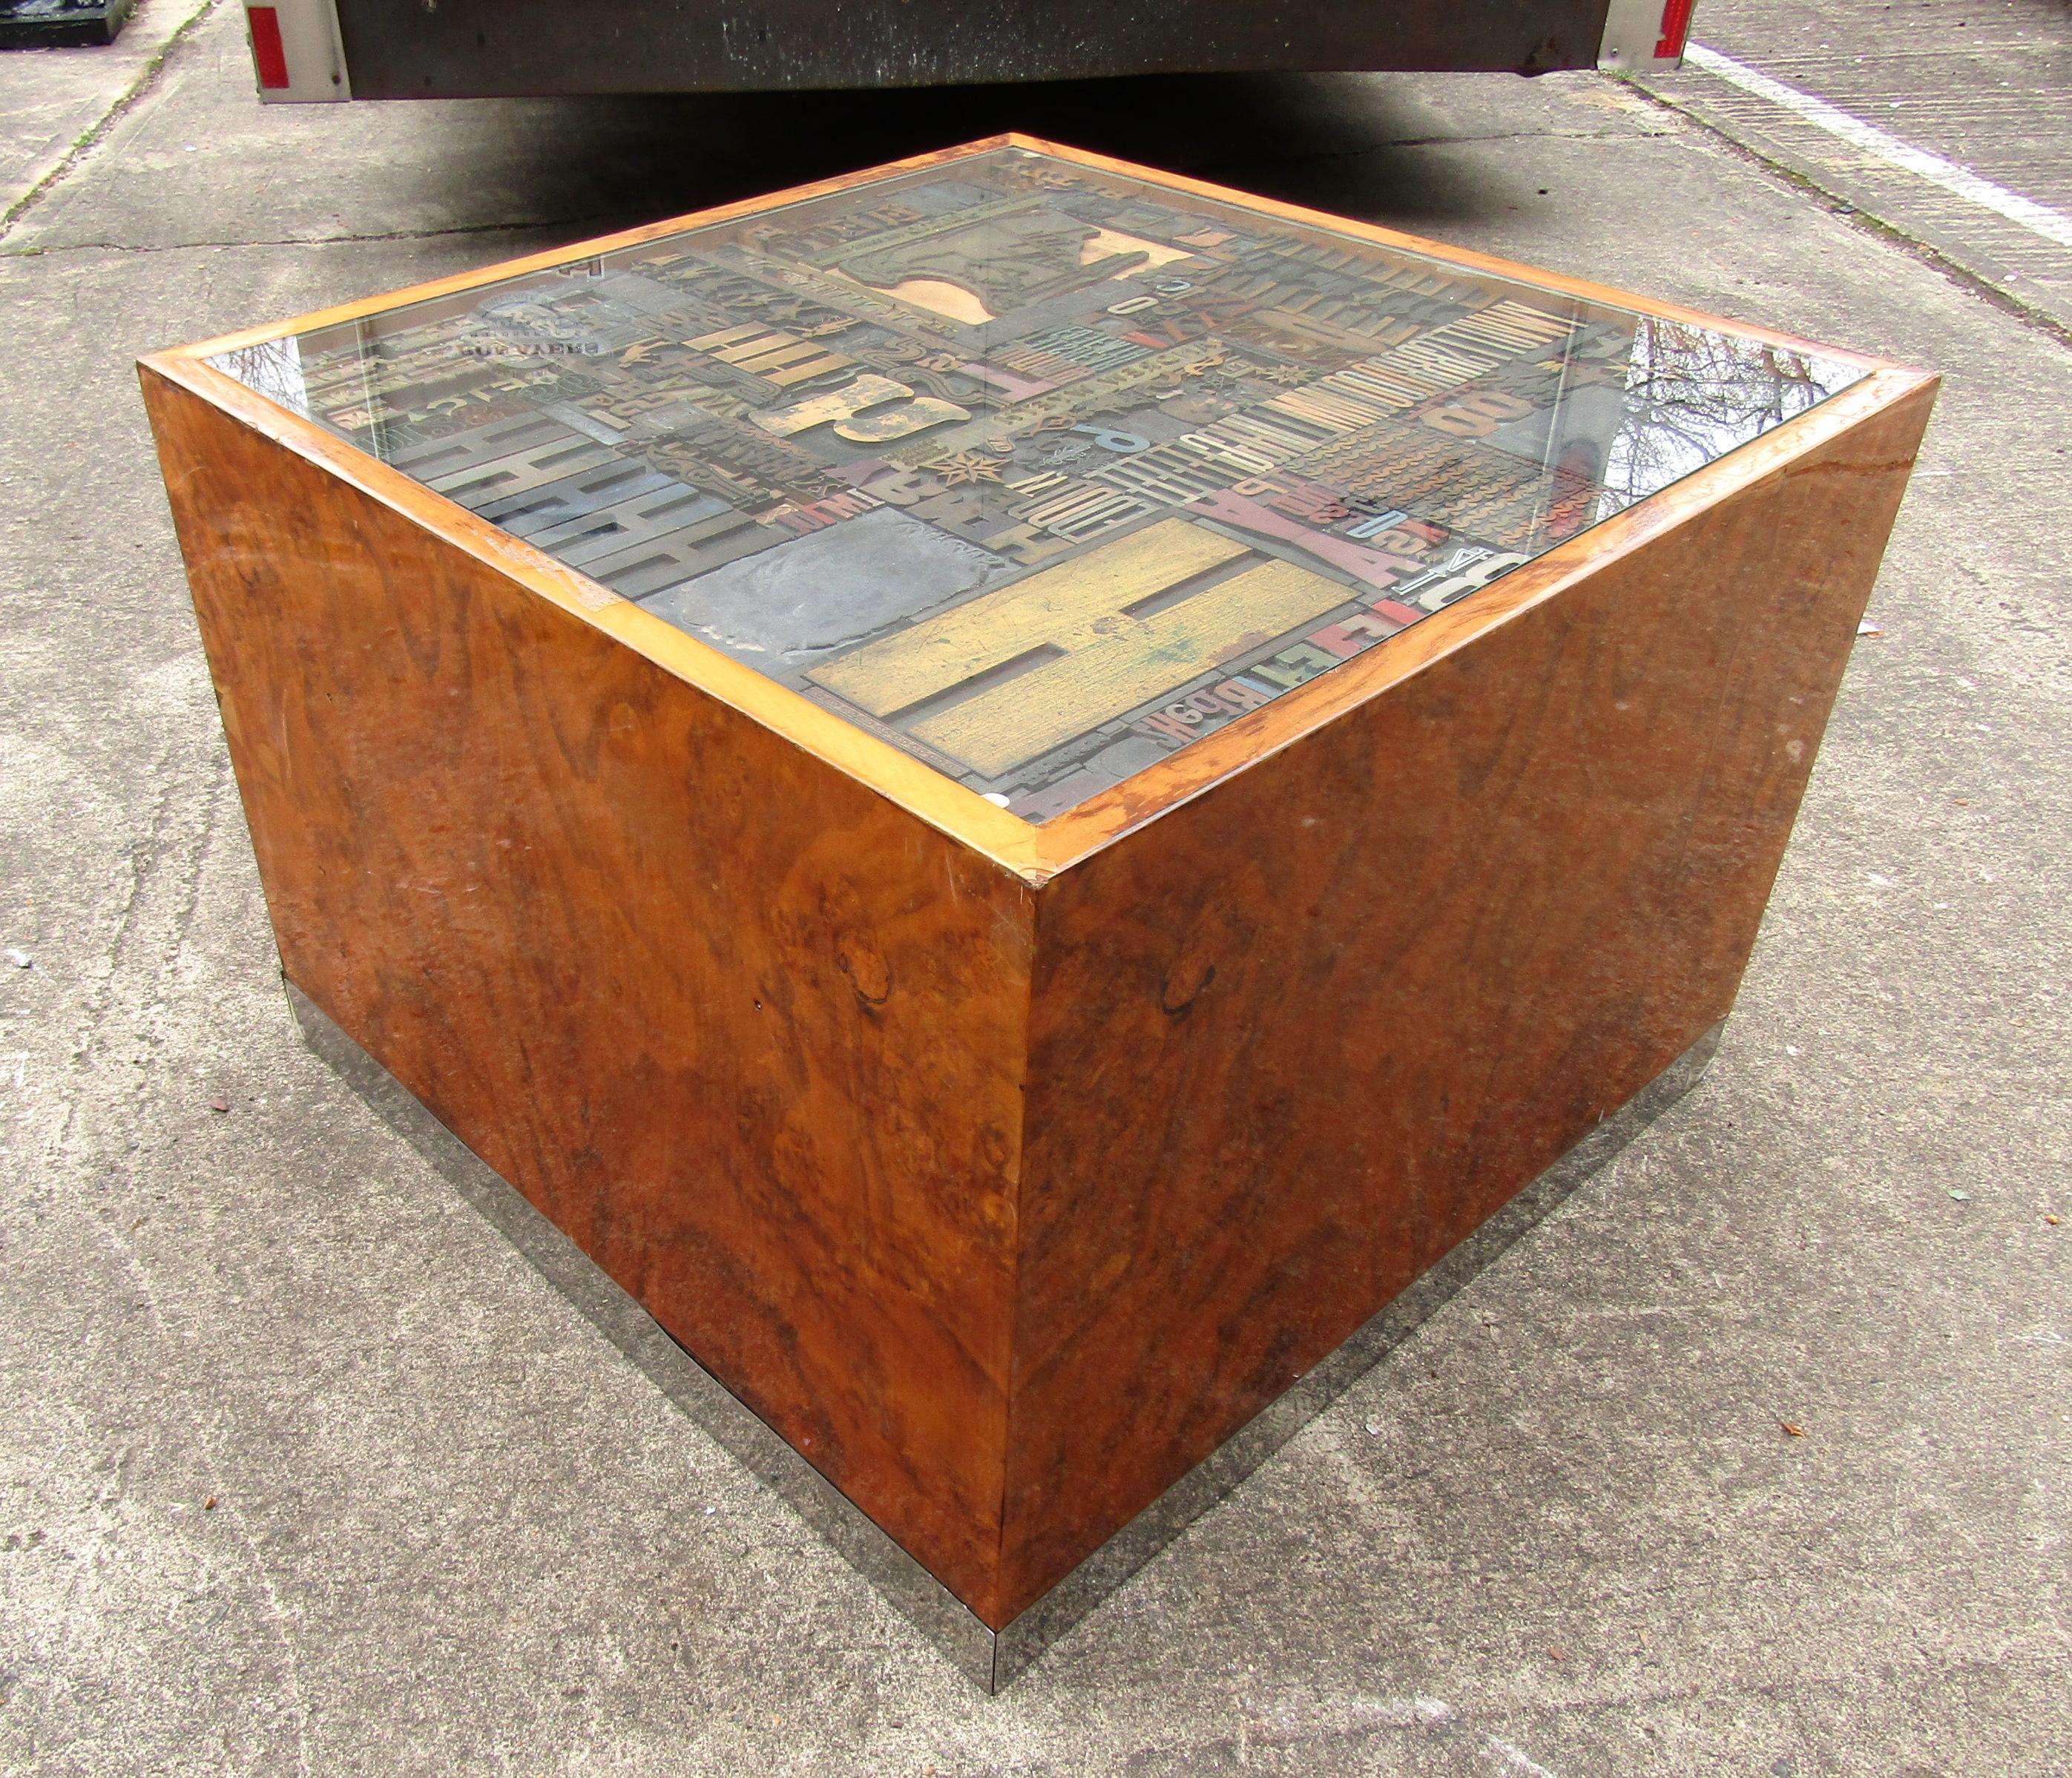 Table basse cubique en bois de ronce du milieu du siècle, avec des motifs uniques de carreaux de bois à l'intérieur d'un plateau en verre.

(Veuillez confirmer l'emplacement de l'article - NY ou NJ - avec le concessionnaire).